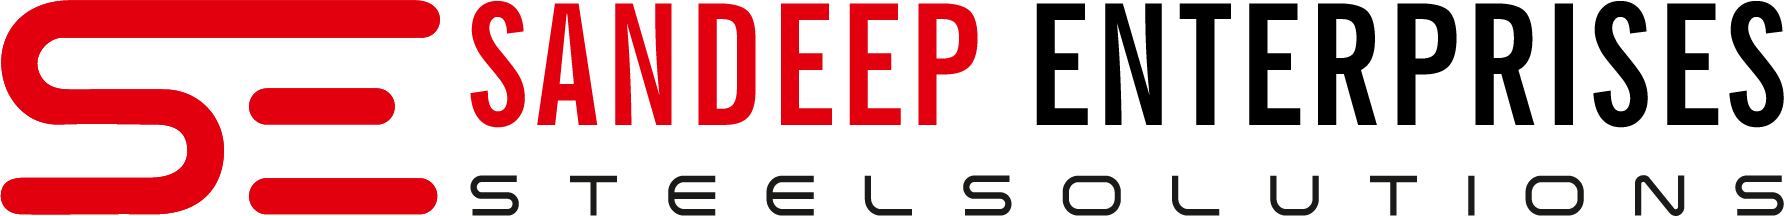 sandeep-enterprises-main-logo